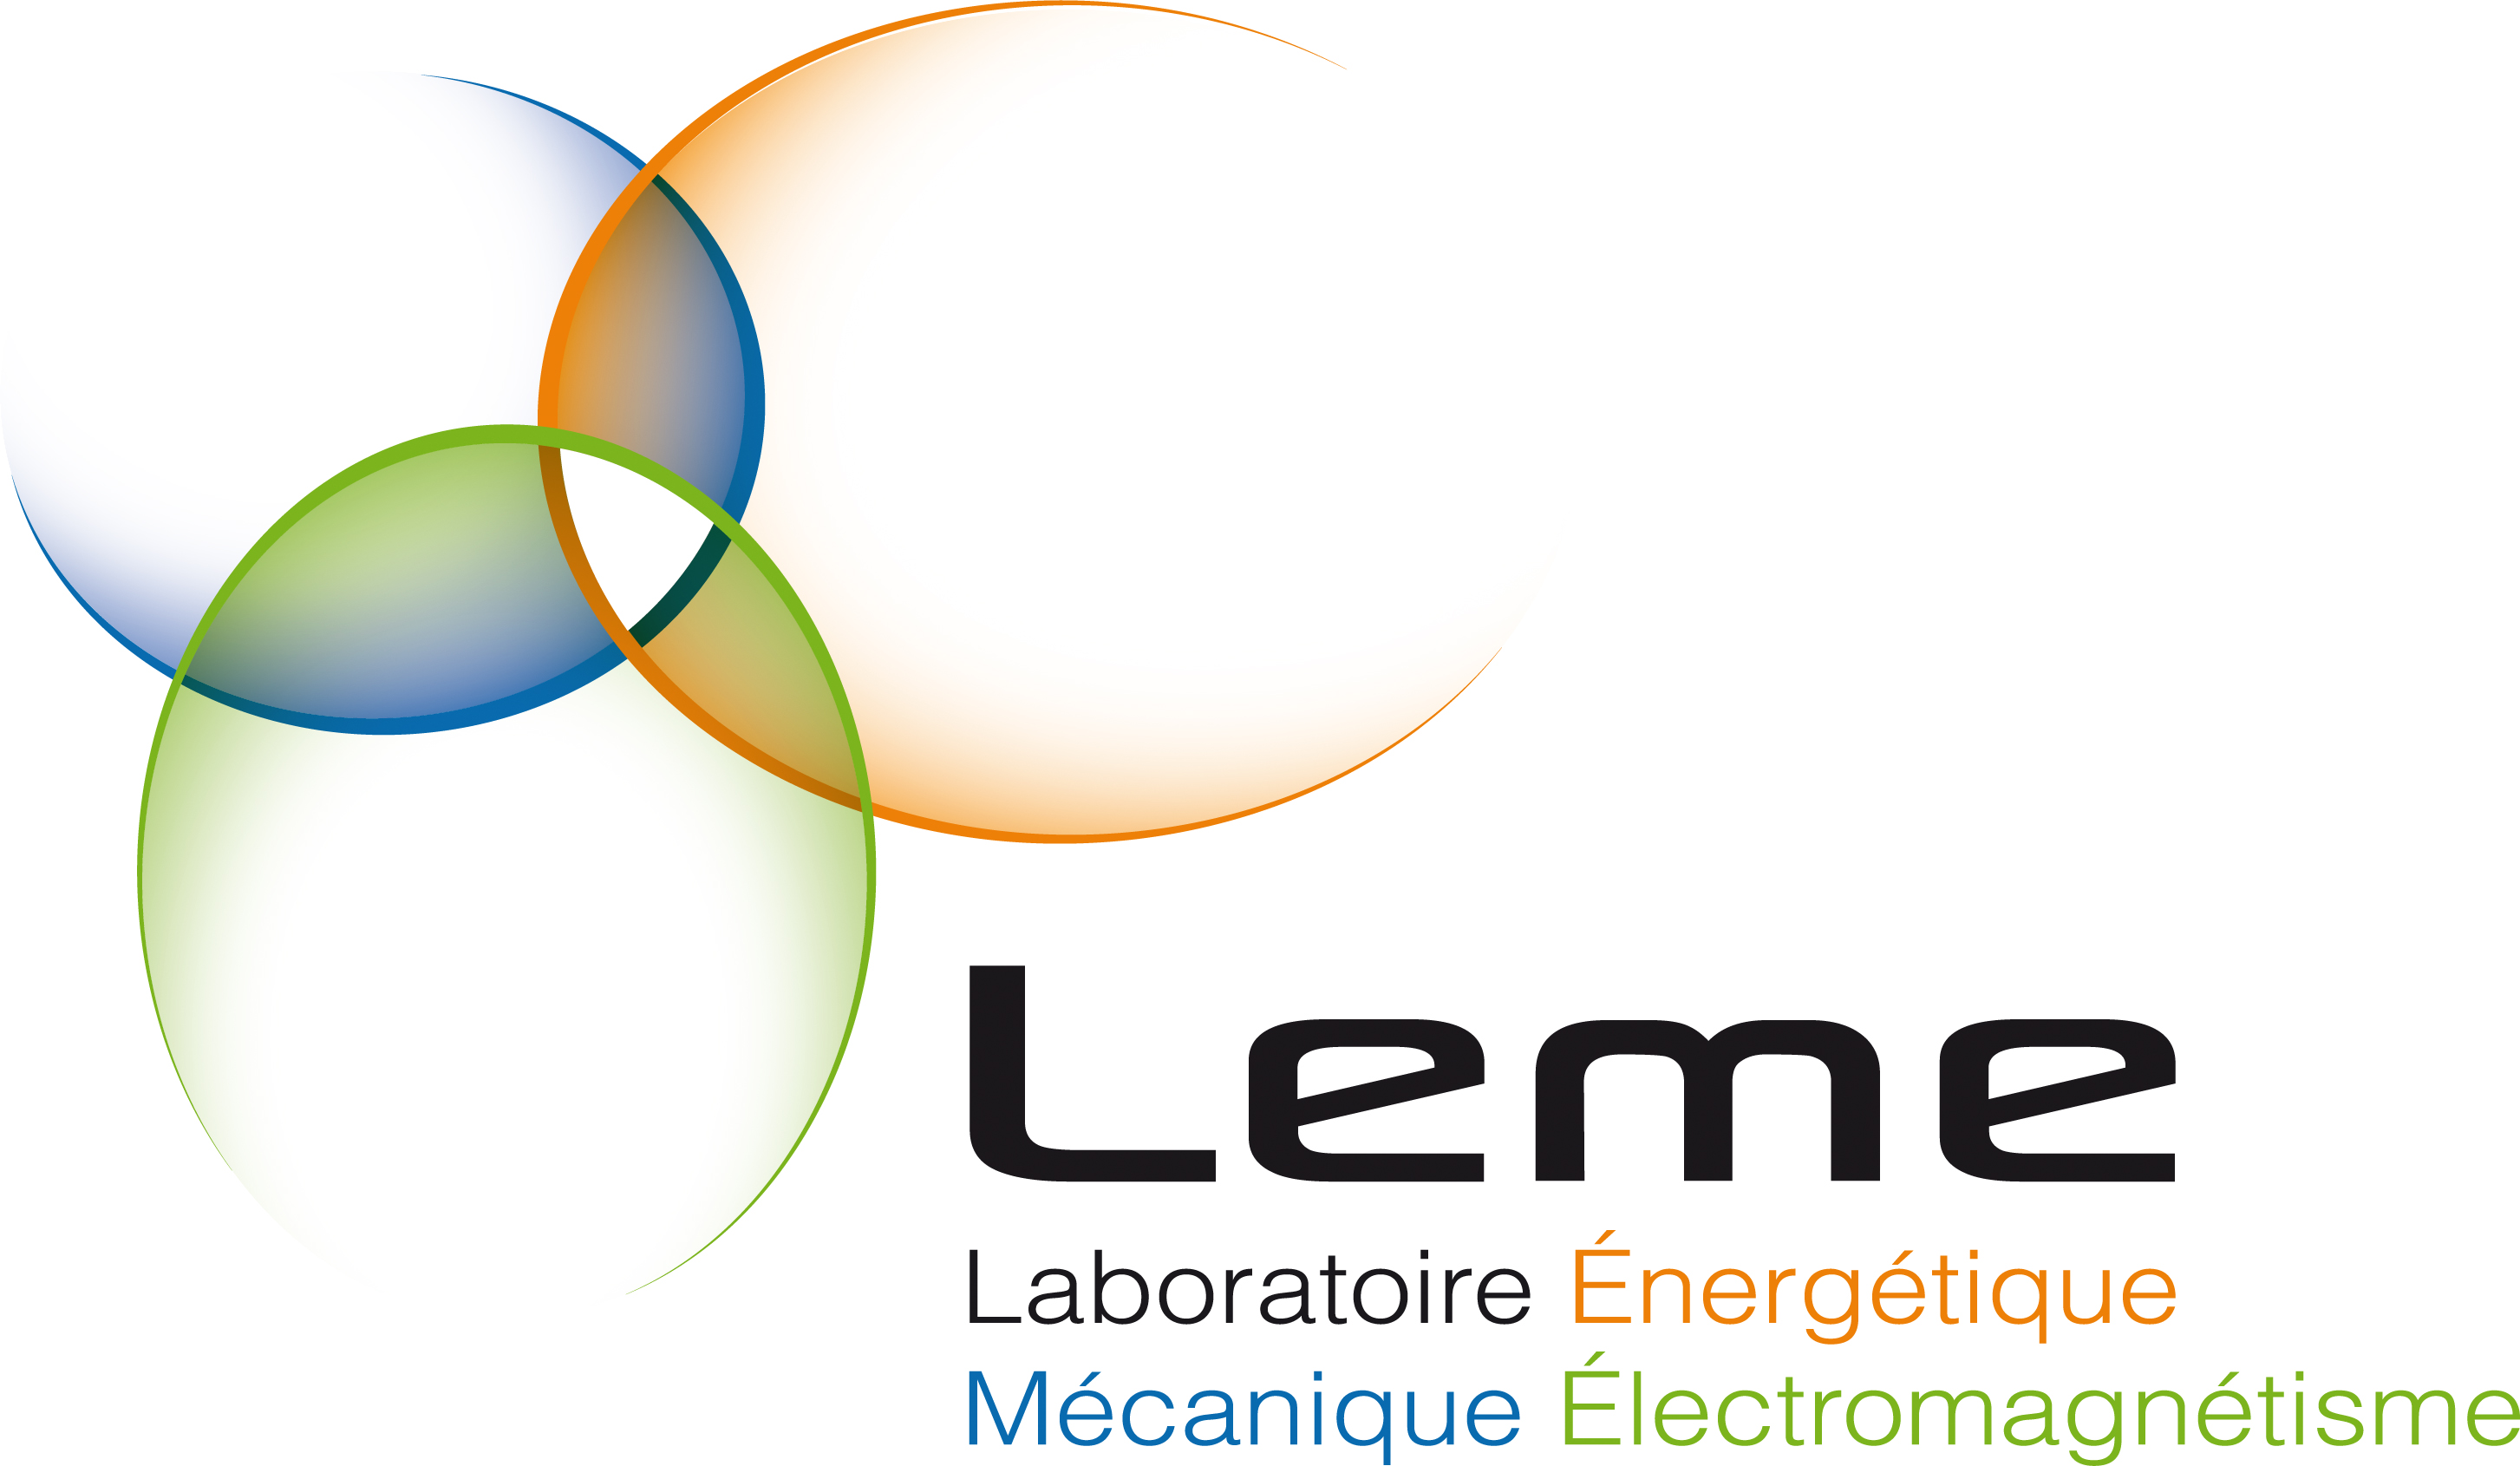 LEME - Laboratoire Energétique Mécanique Electromagnétisme